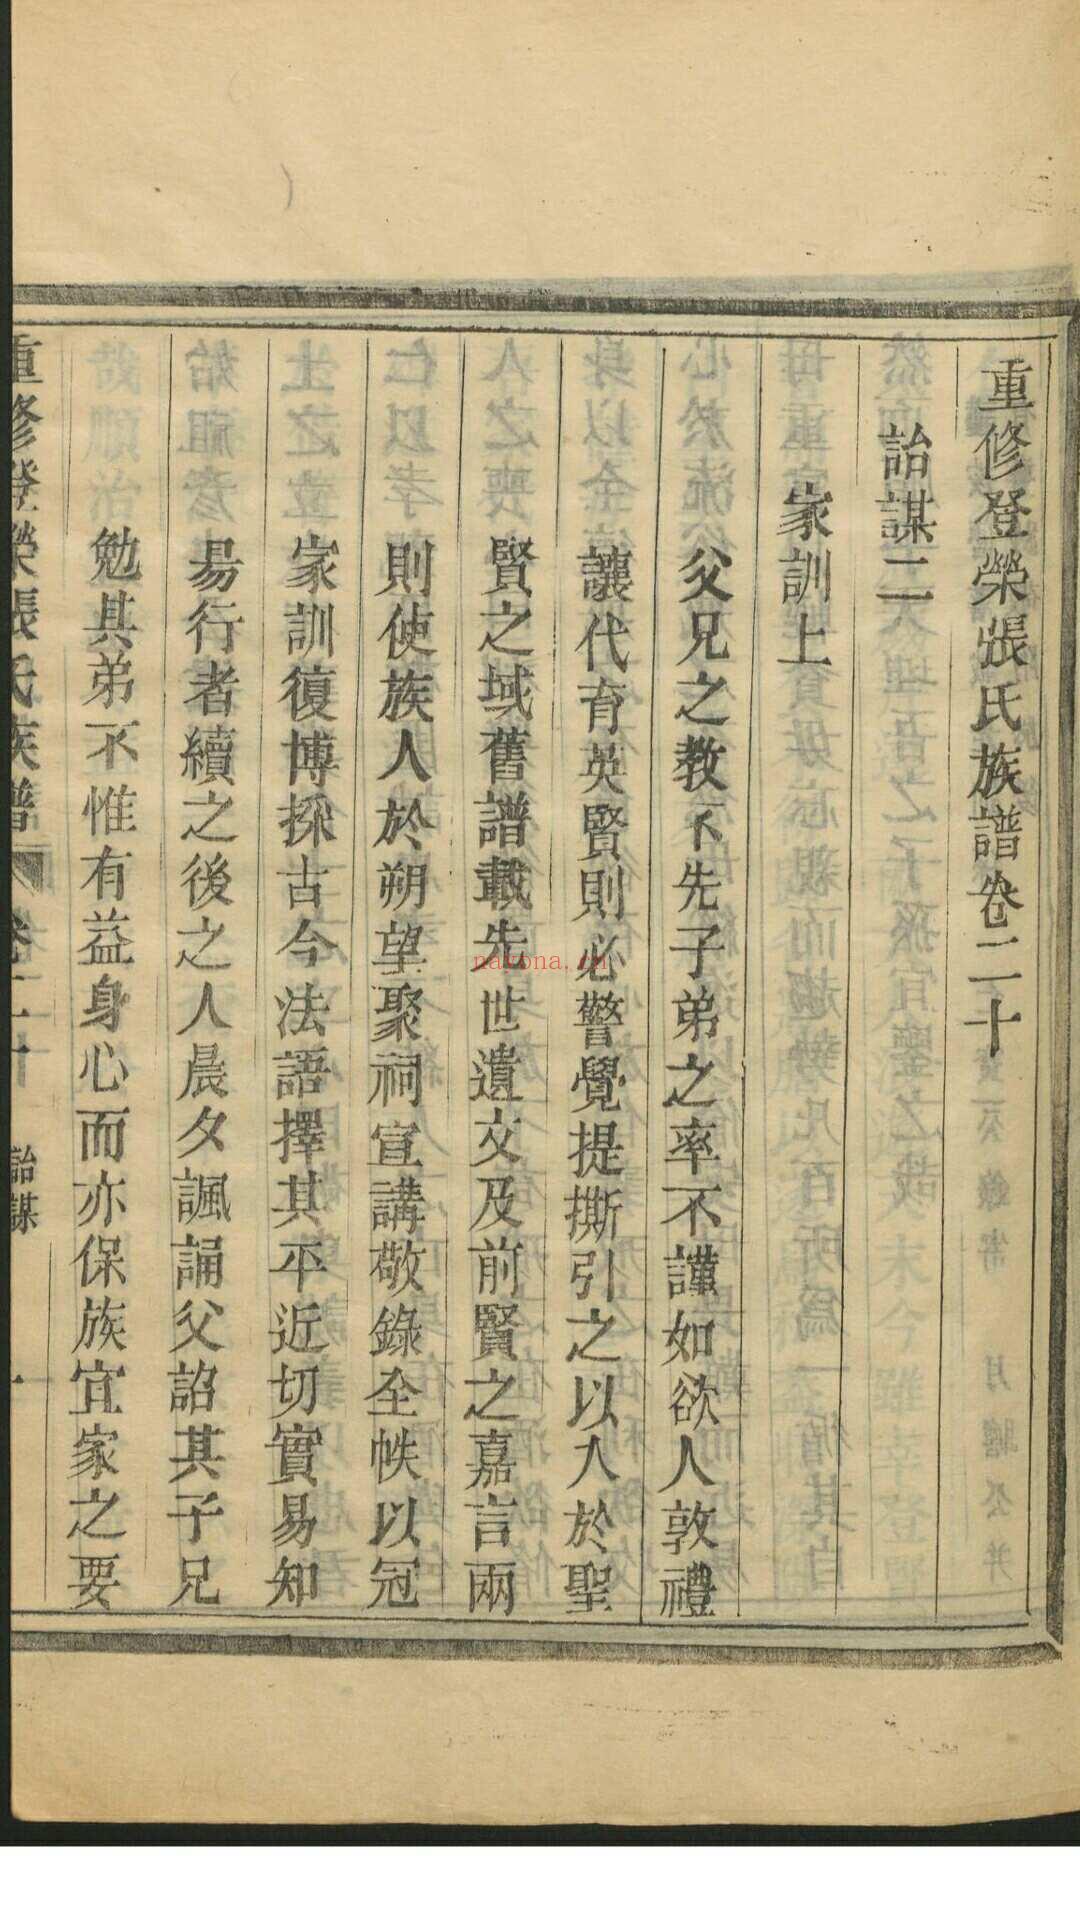 登荣张氏族谱 24卷, 卷首1卷 道光辛丑